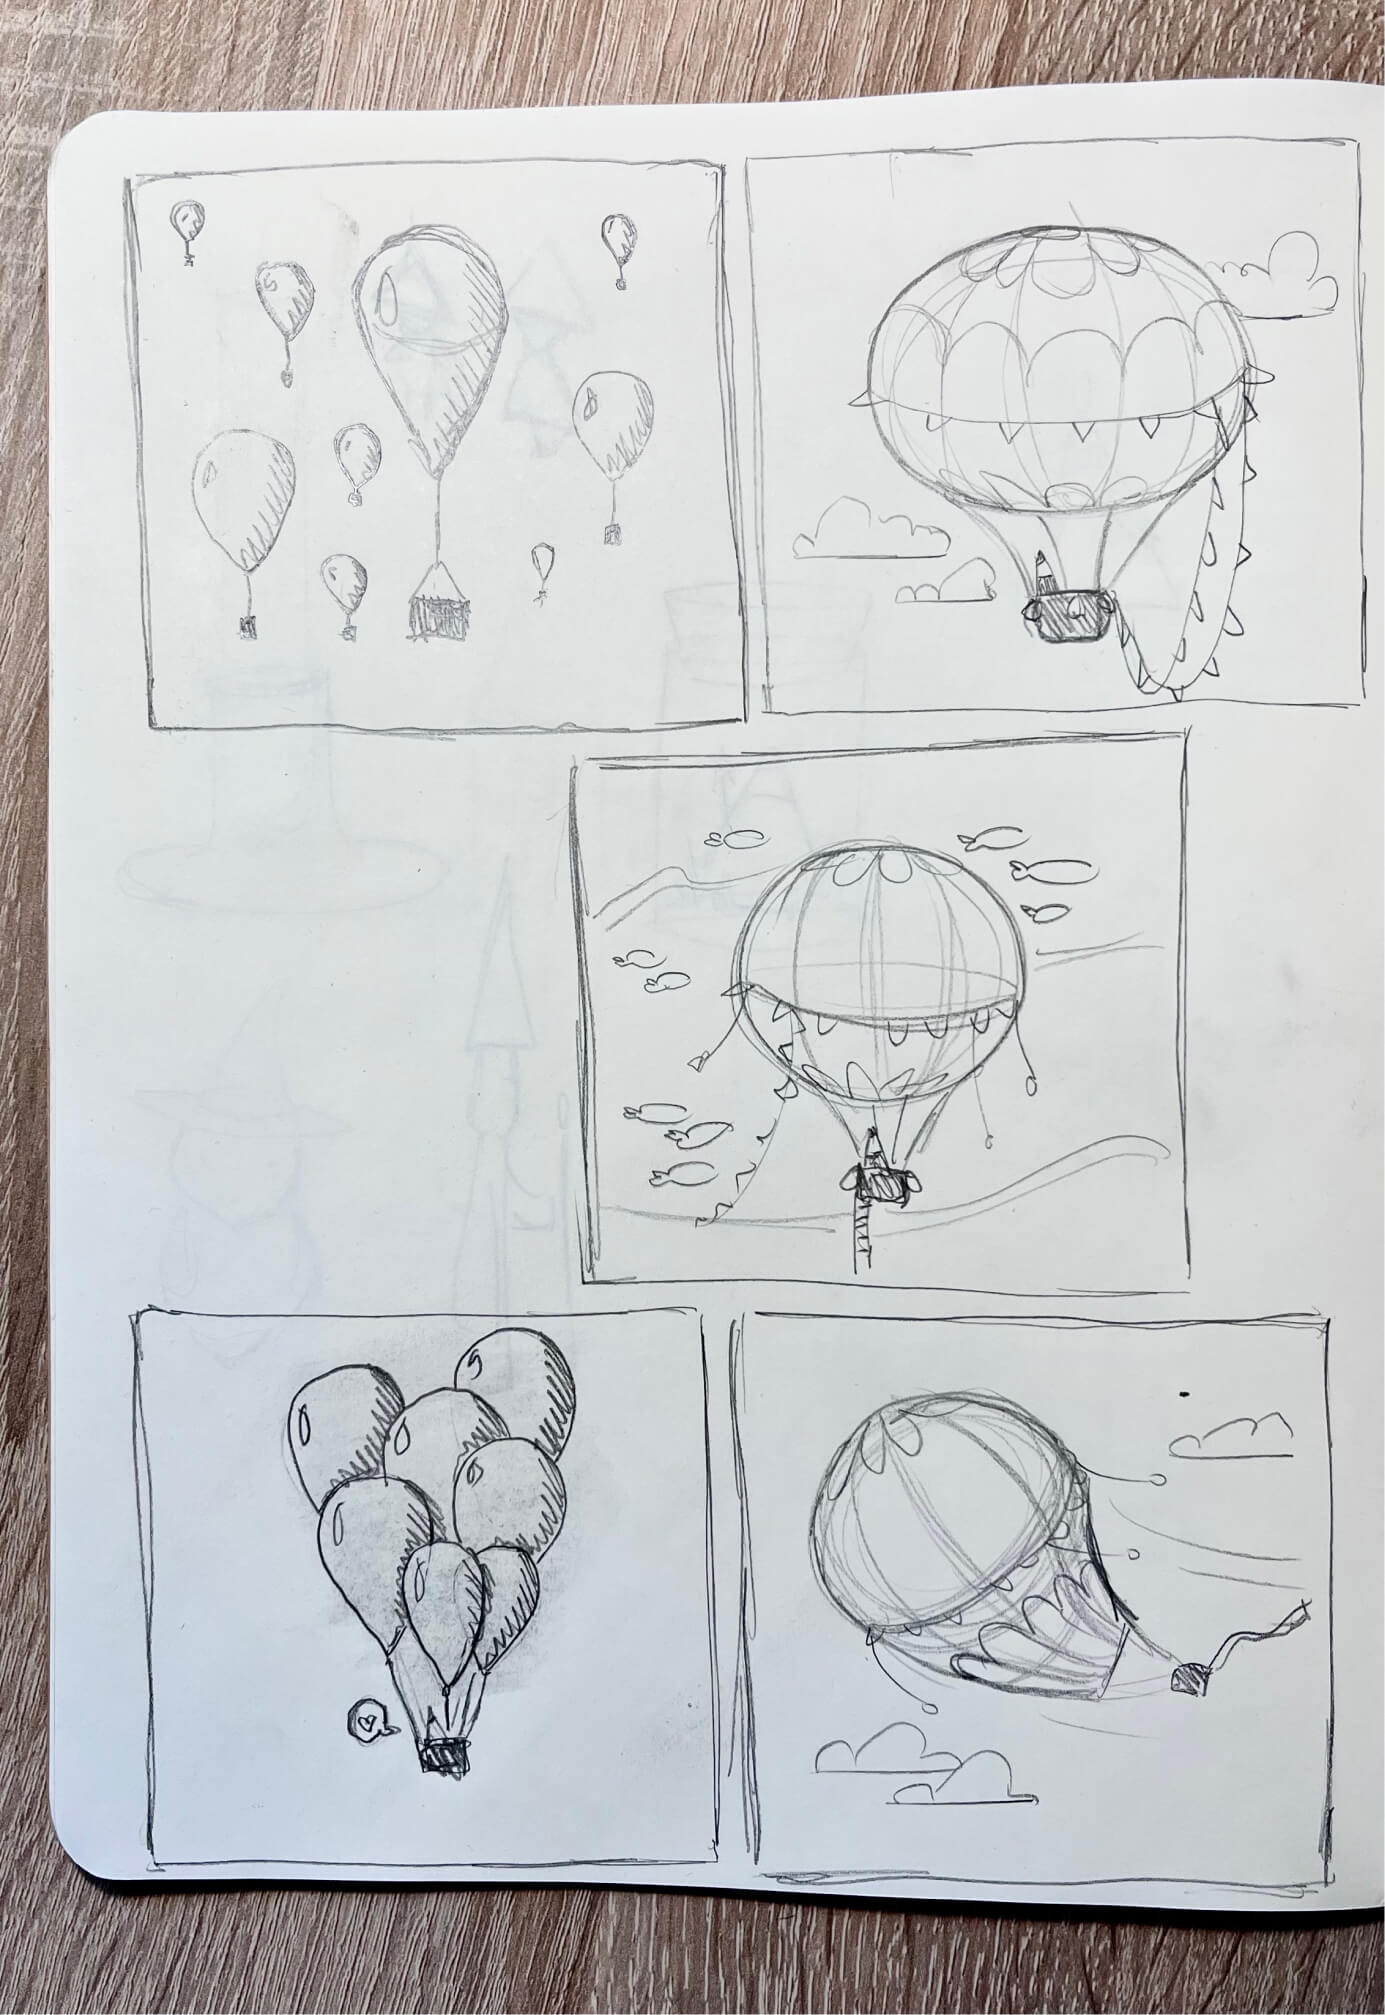 Pagina con schizzi disegnati di mongolfiere